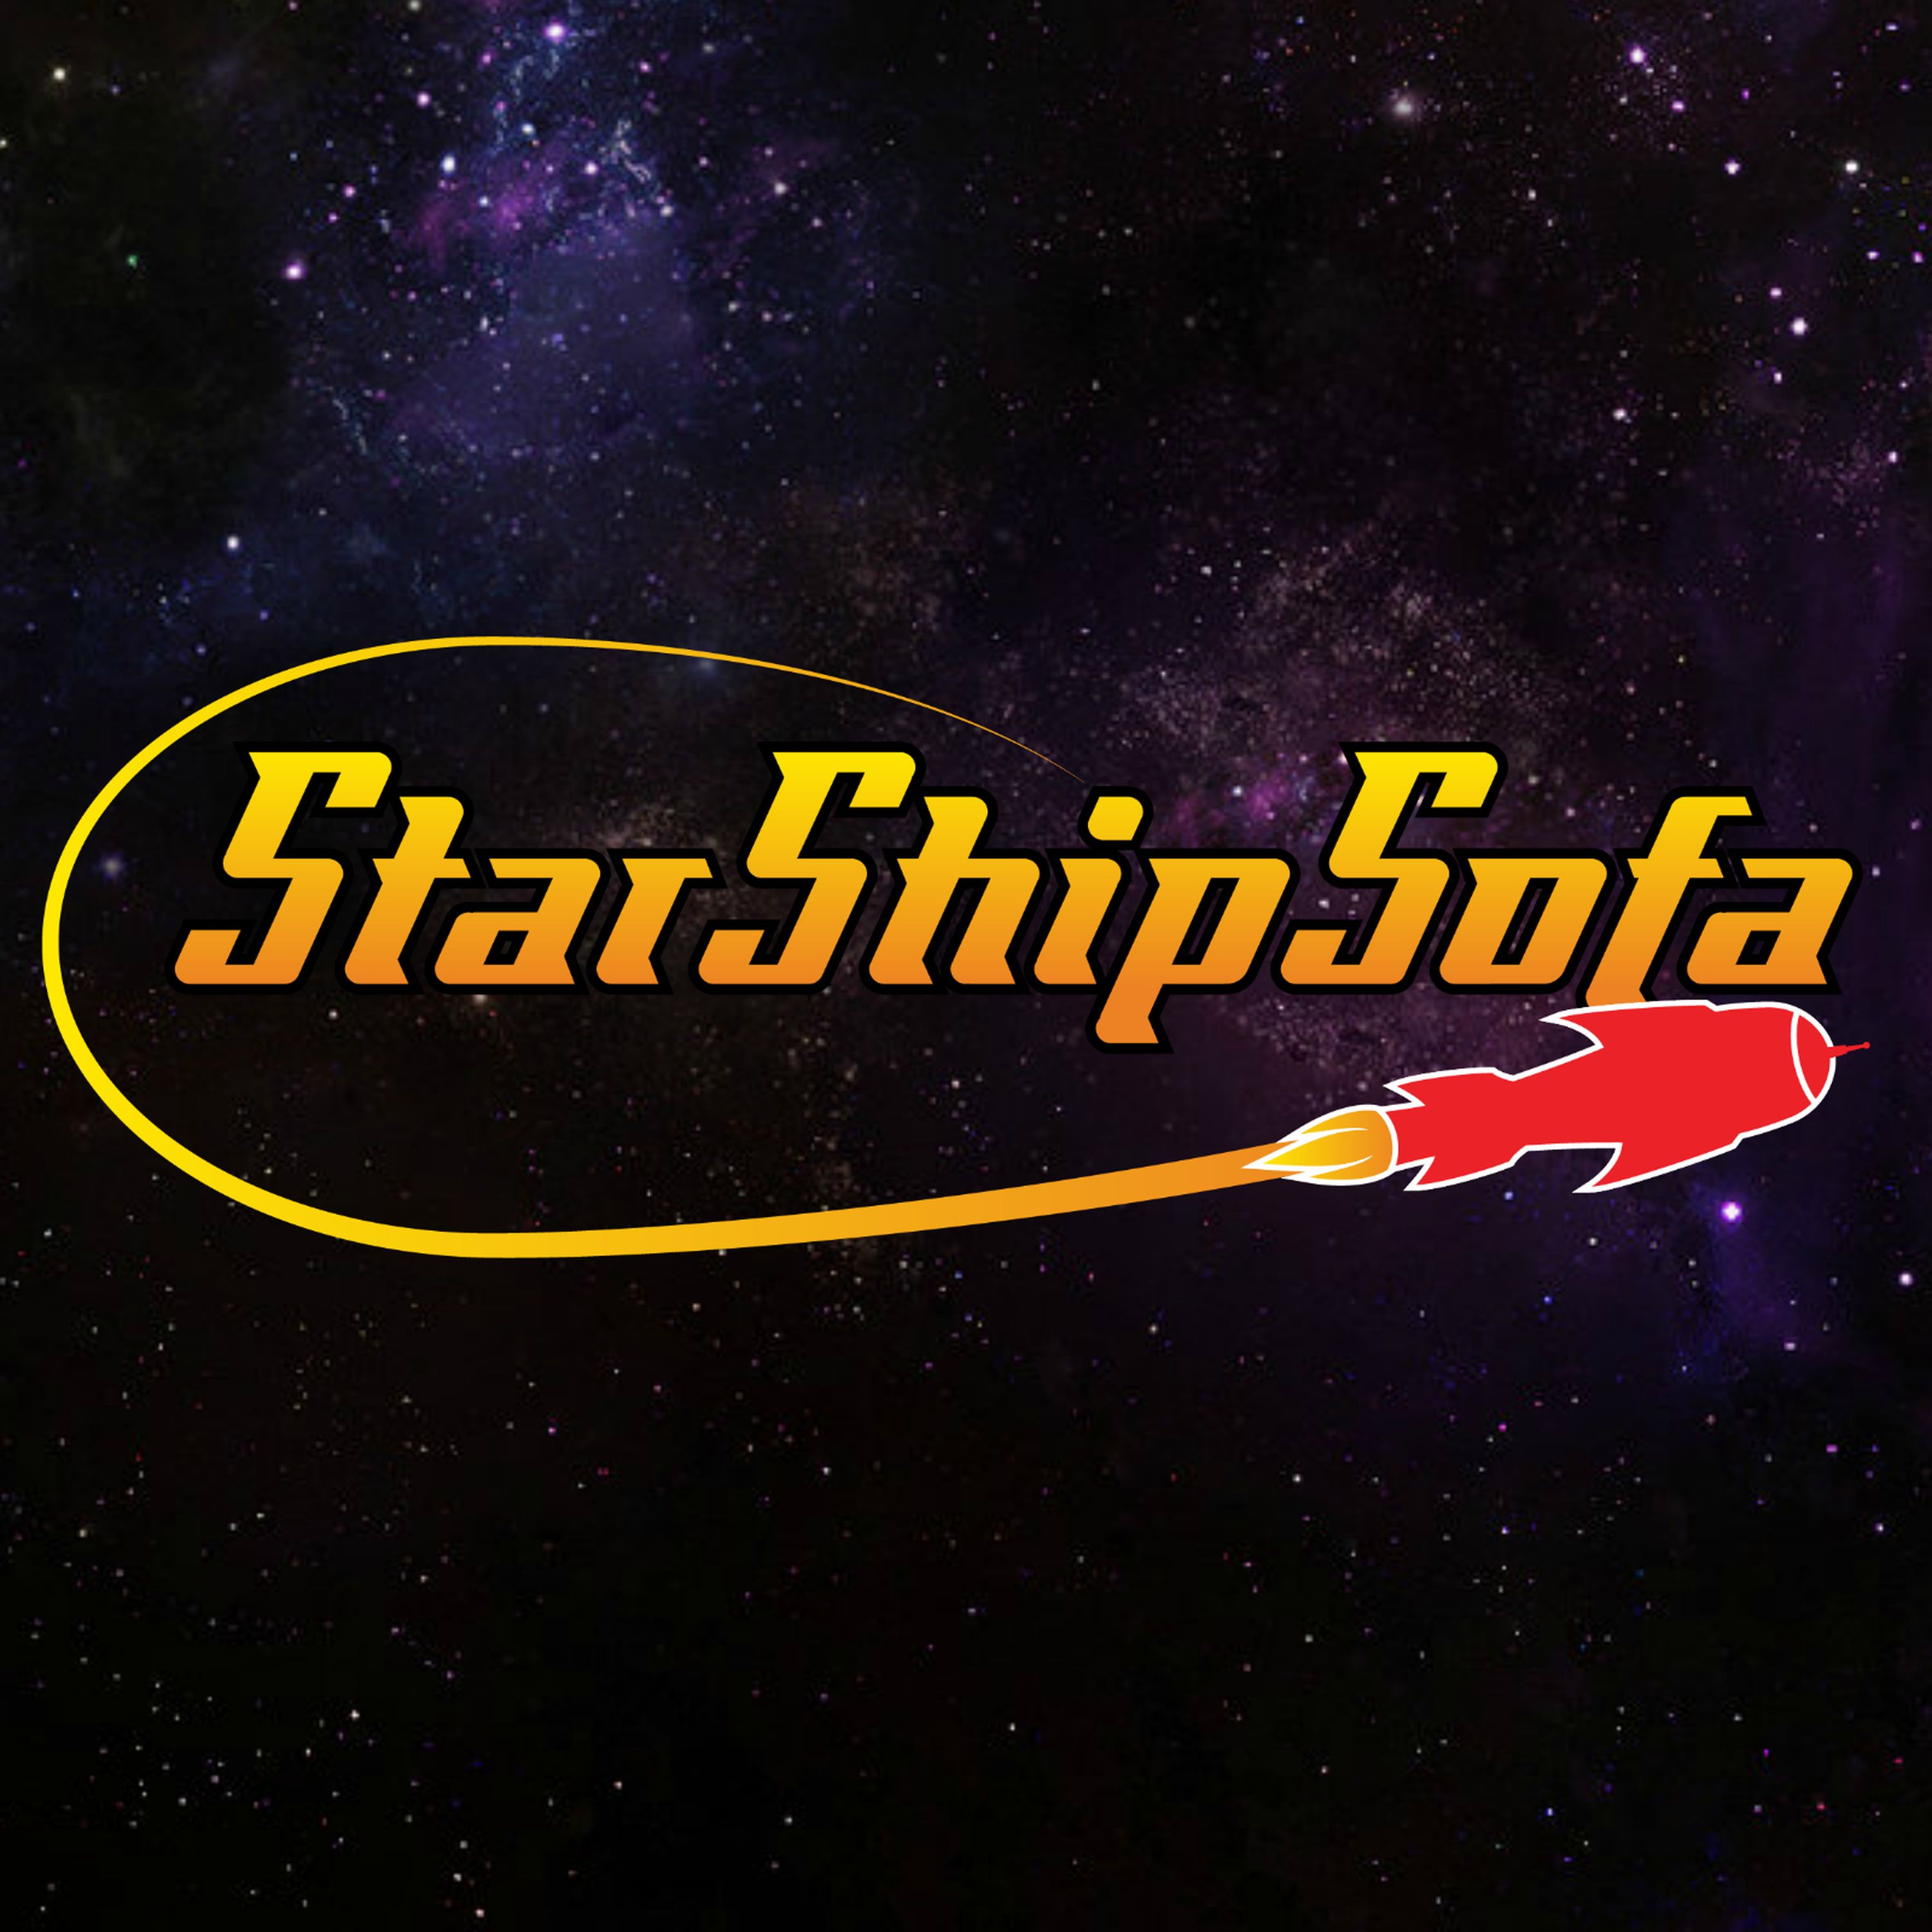 StarShipSofa No 615 Steven Fischer